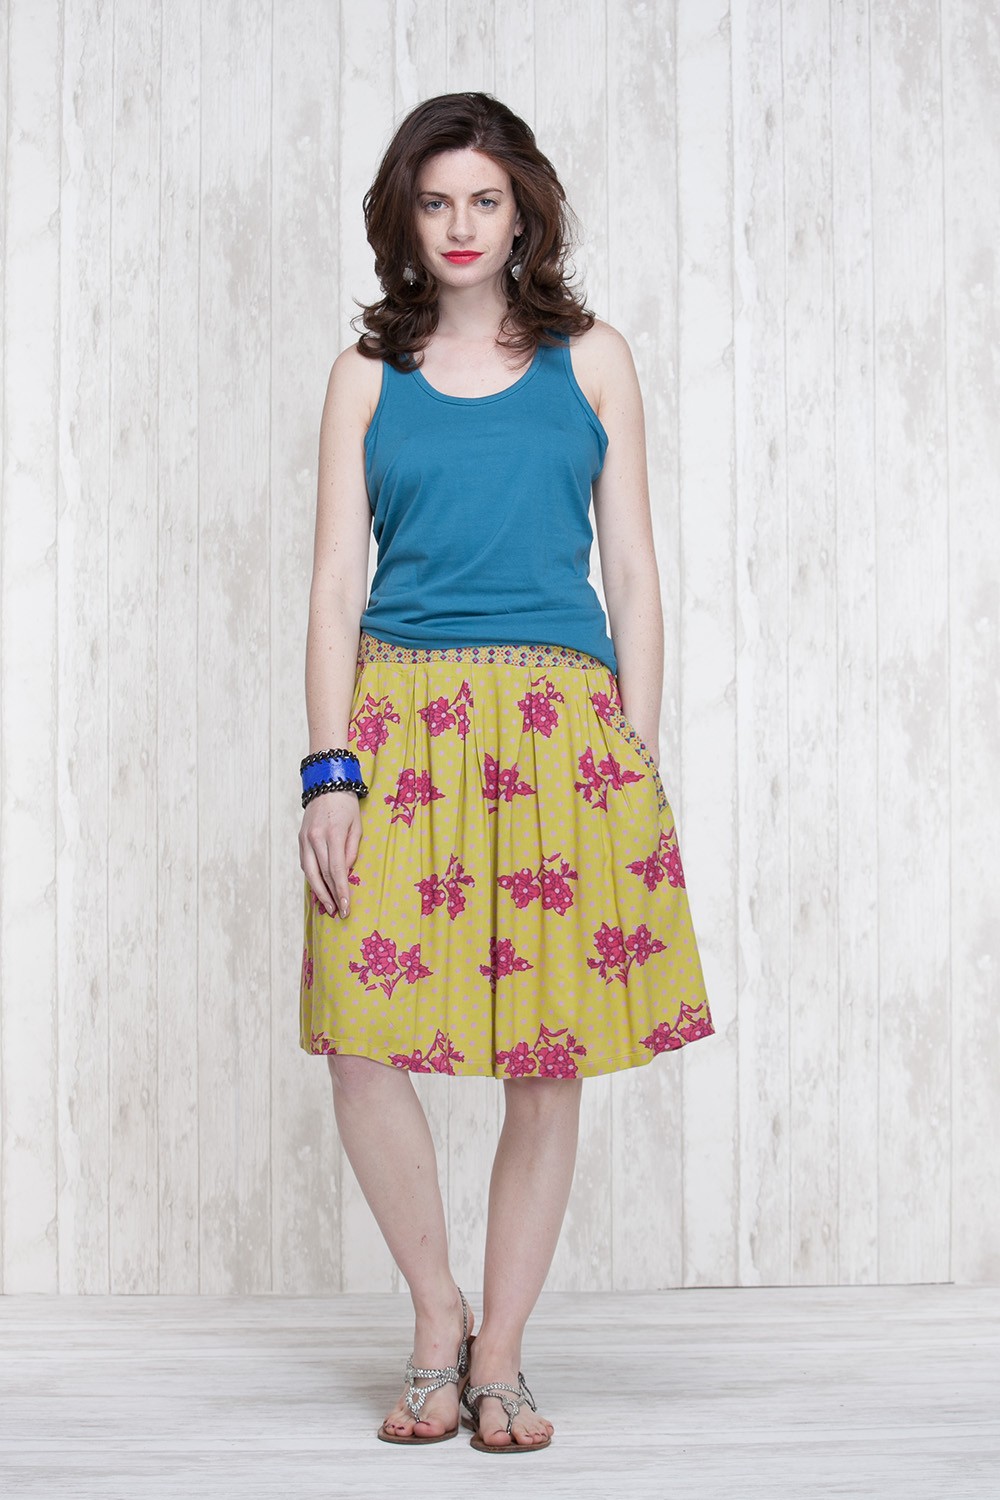 Skirt Oive-Blue  662-30